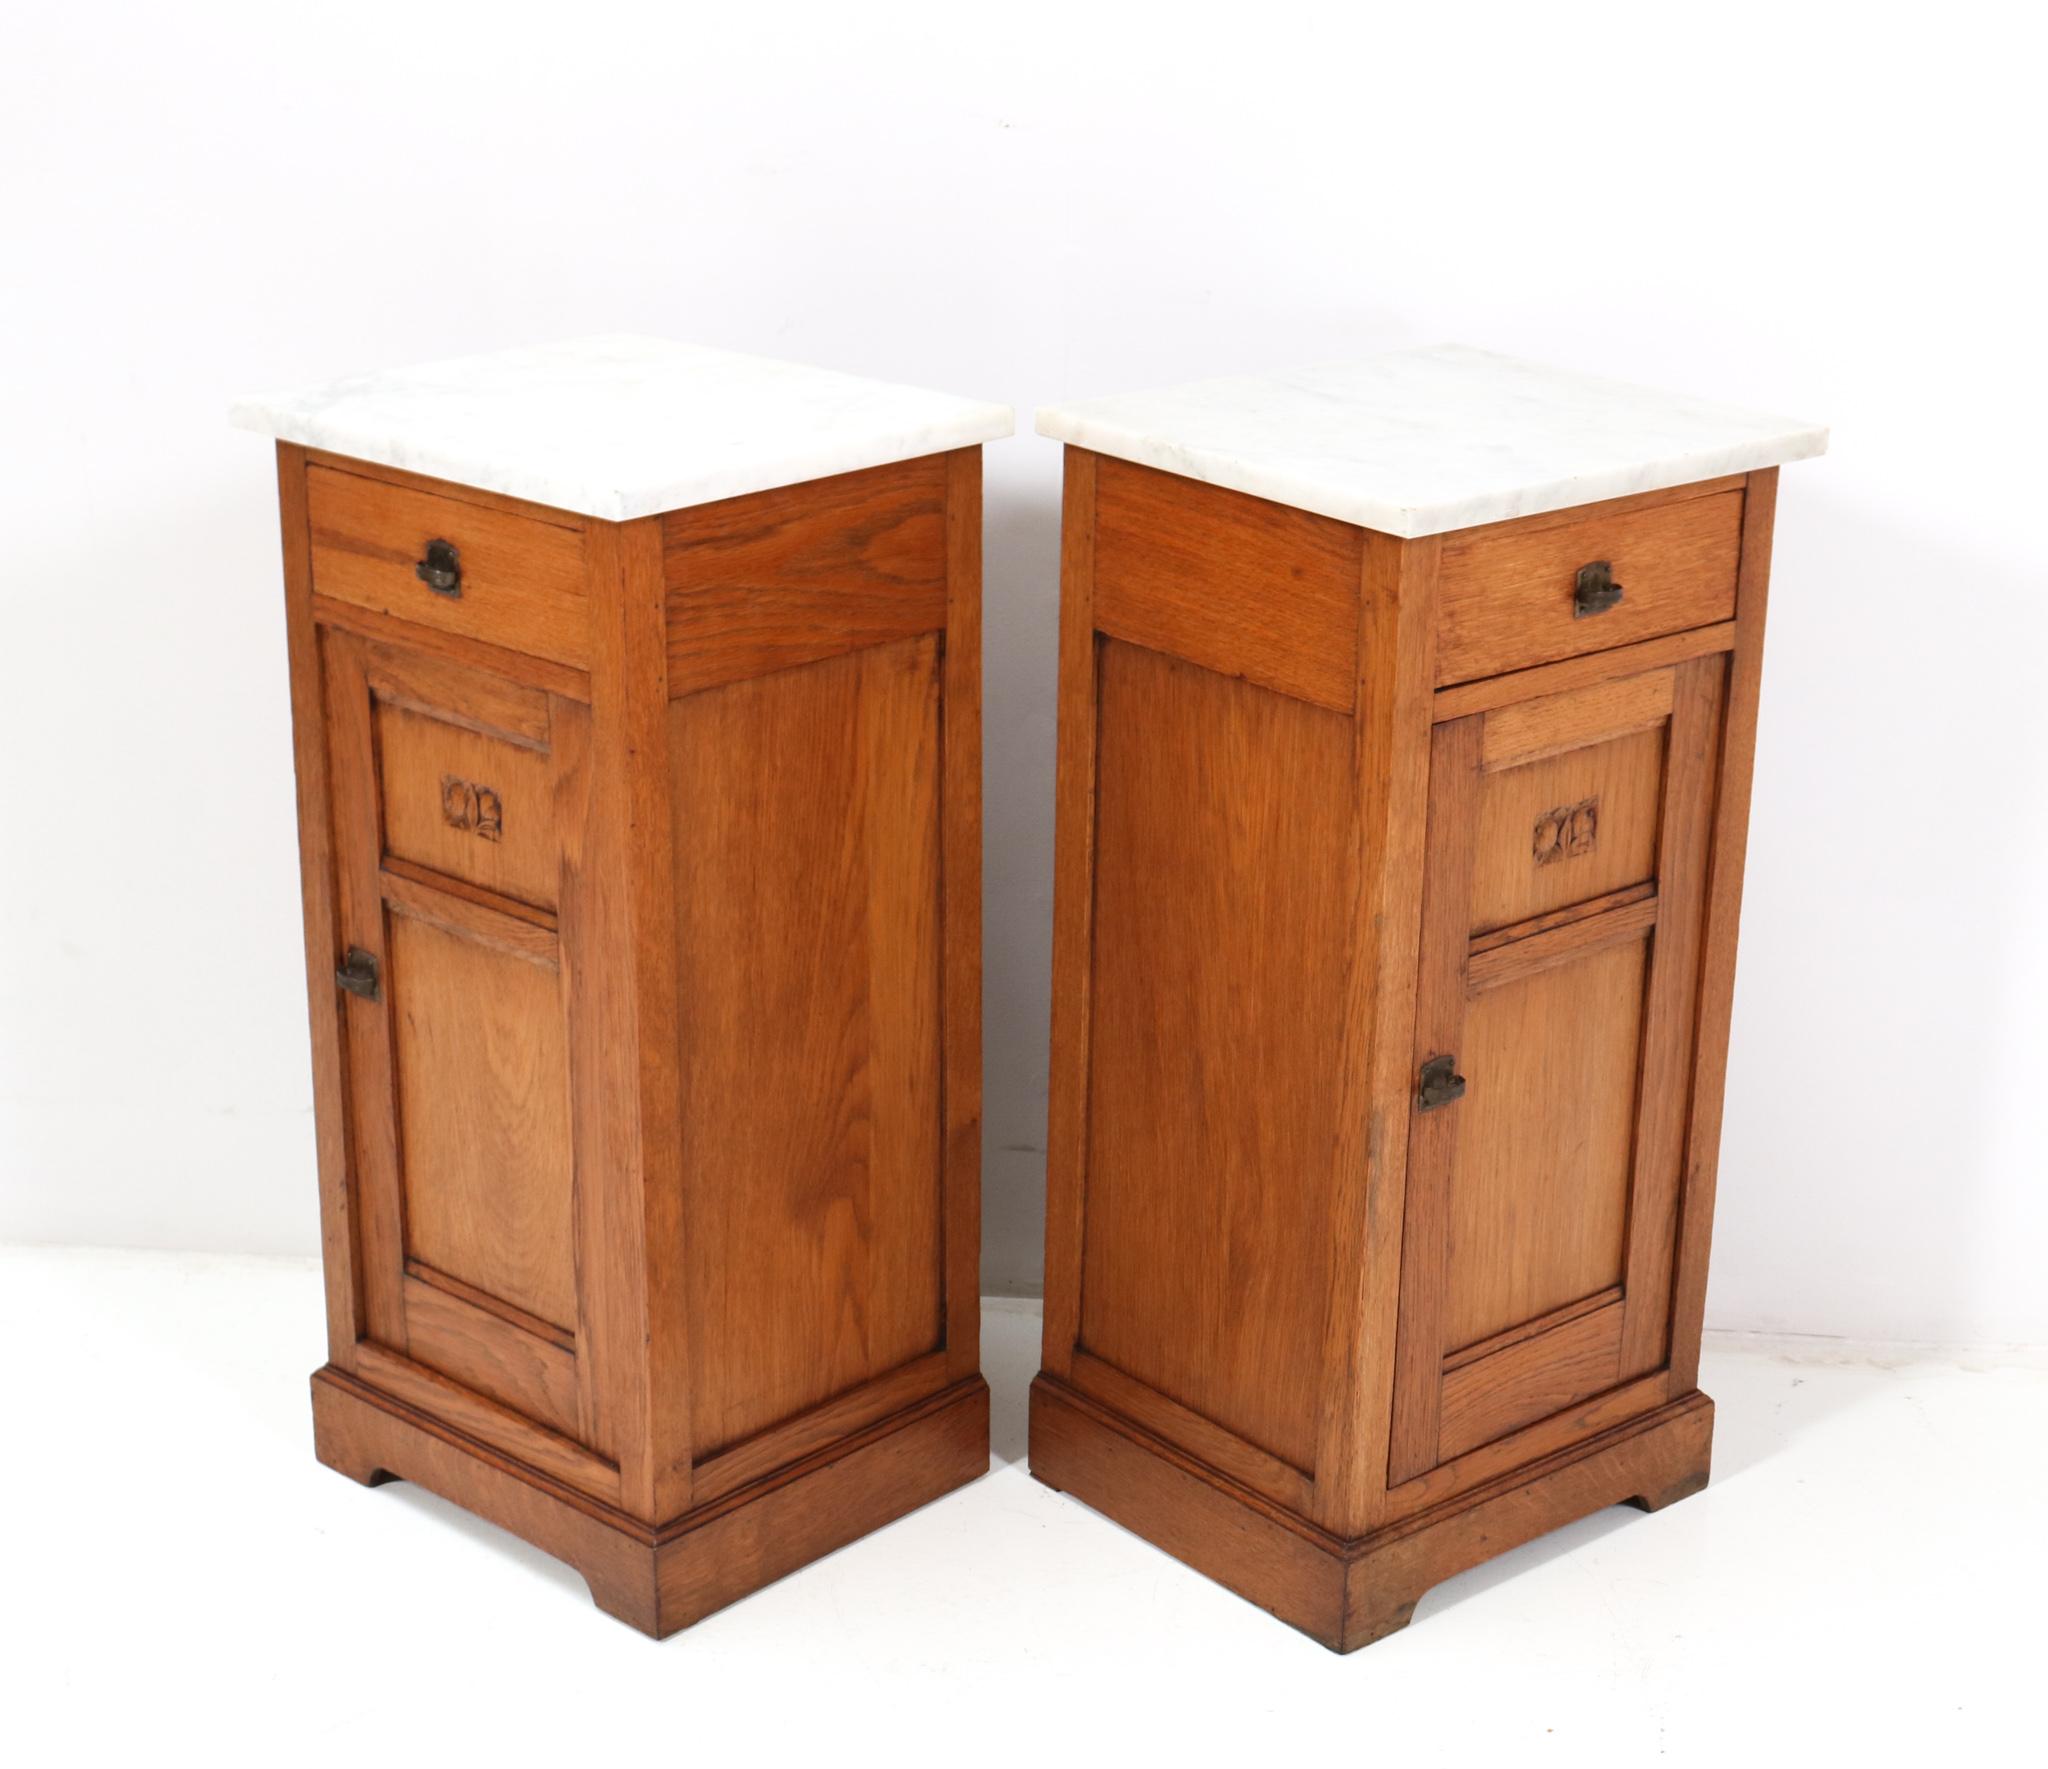 Two Oak Art Nouveau Jugendstil Nightstands or Bedside Tables, 1900s For Sale 4